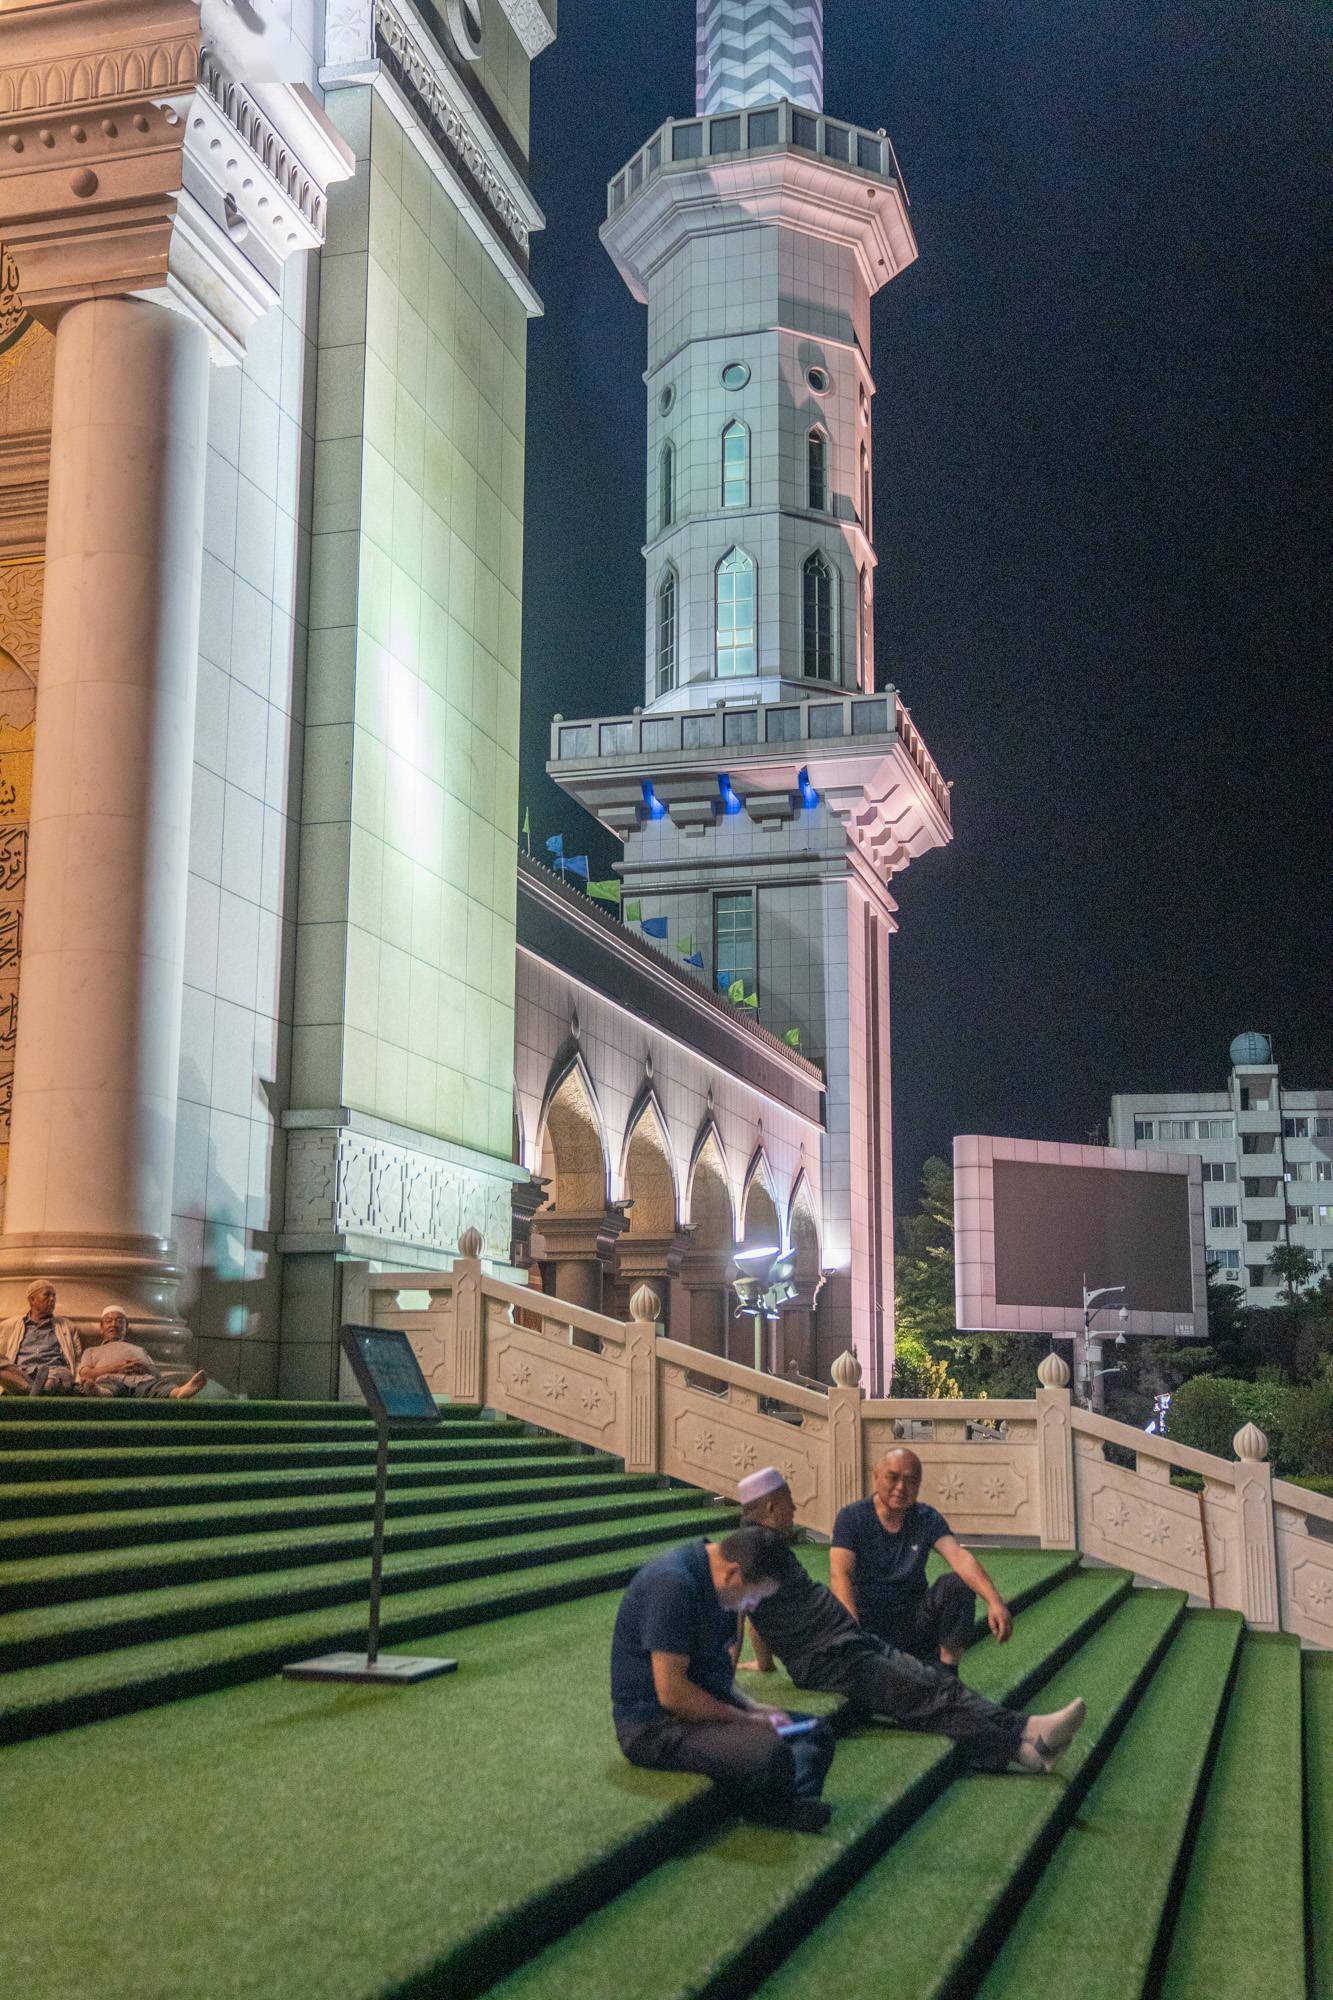 沙甸大清真寺夜景图片